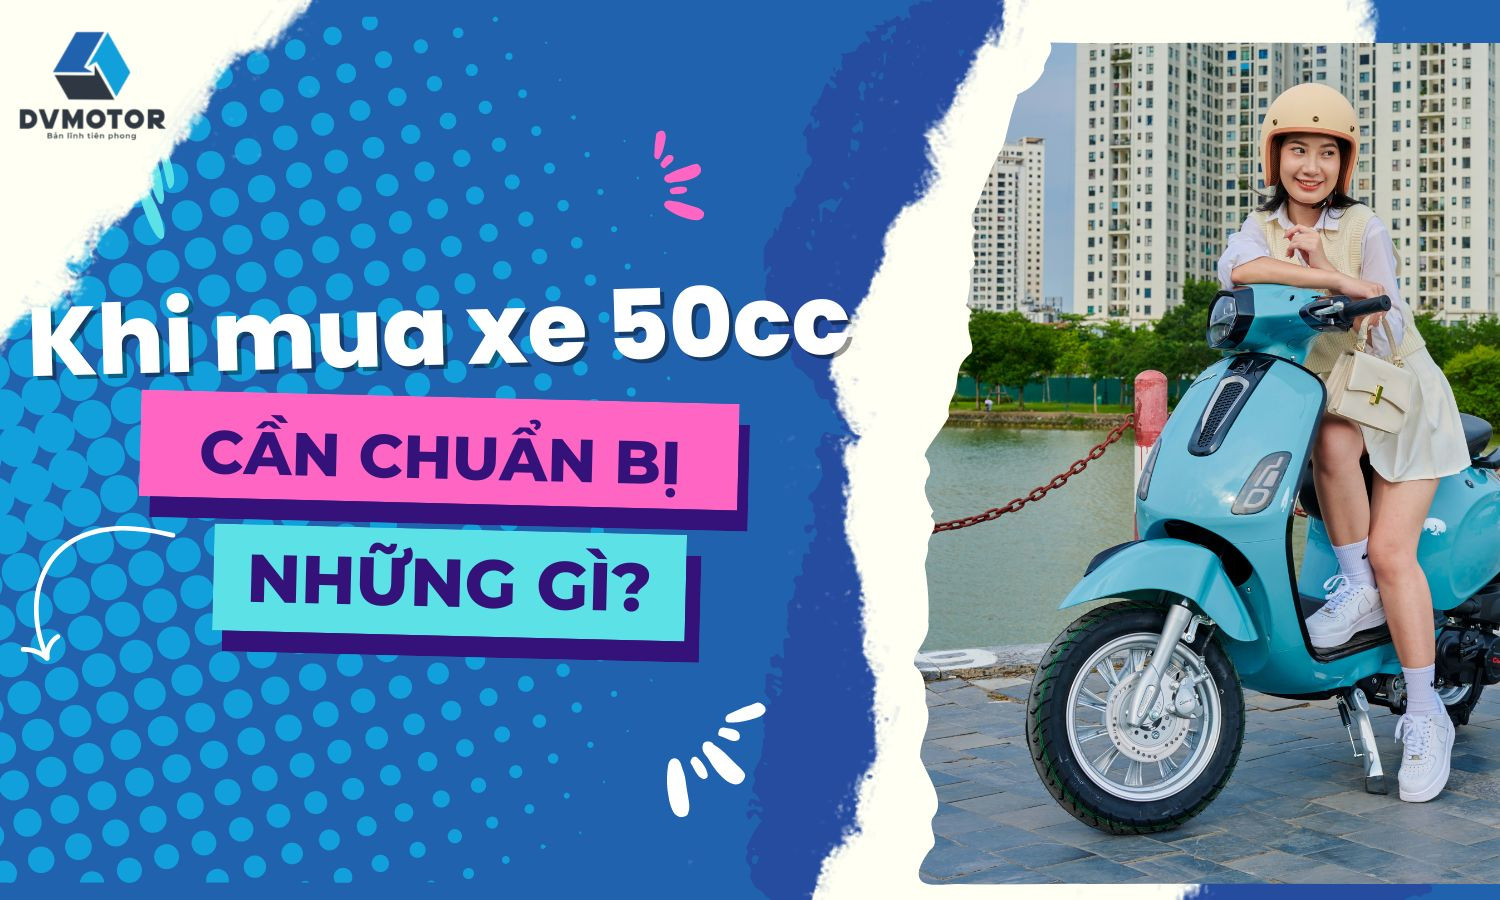 Can Chuan Bi Nhung Giay To Gi Khi Mua Xe May 50cc (1)